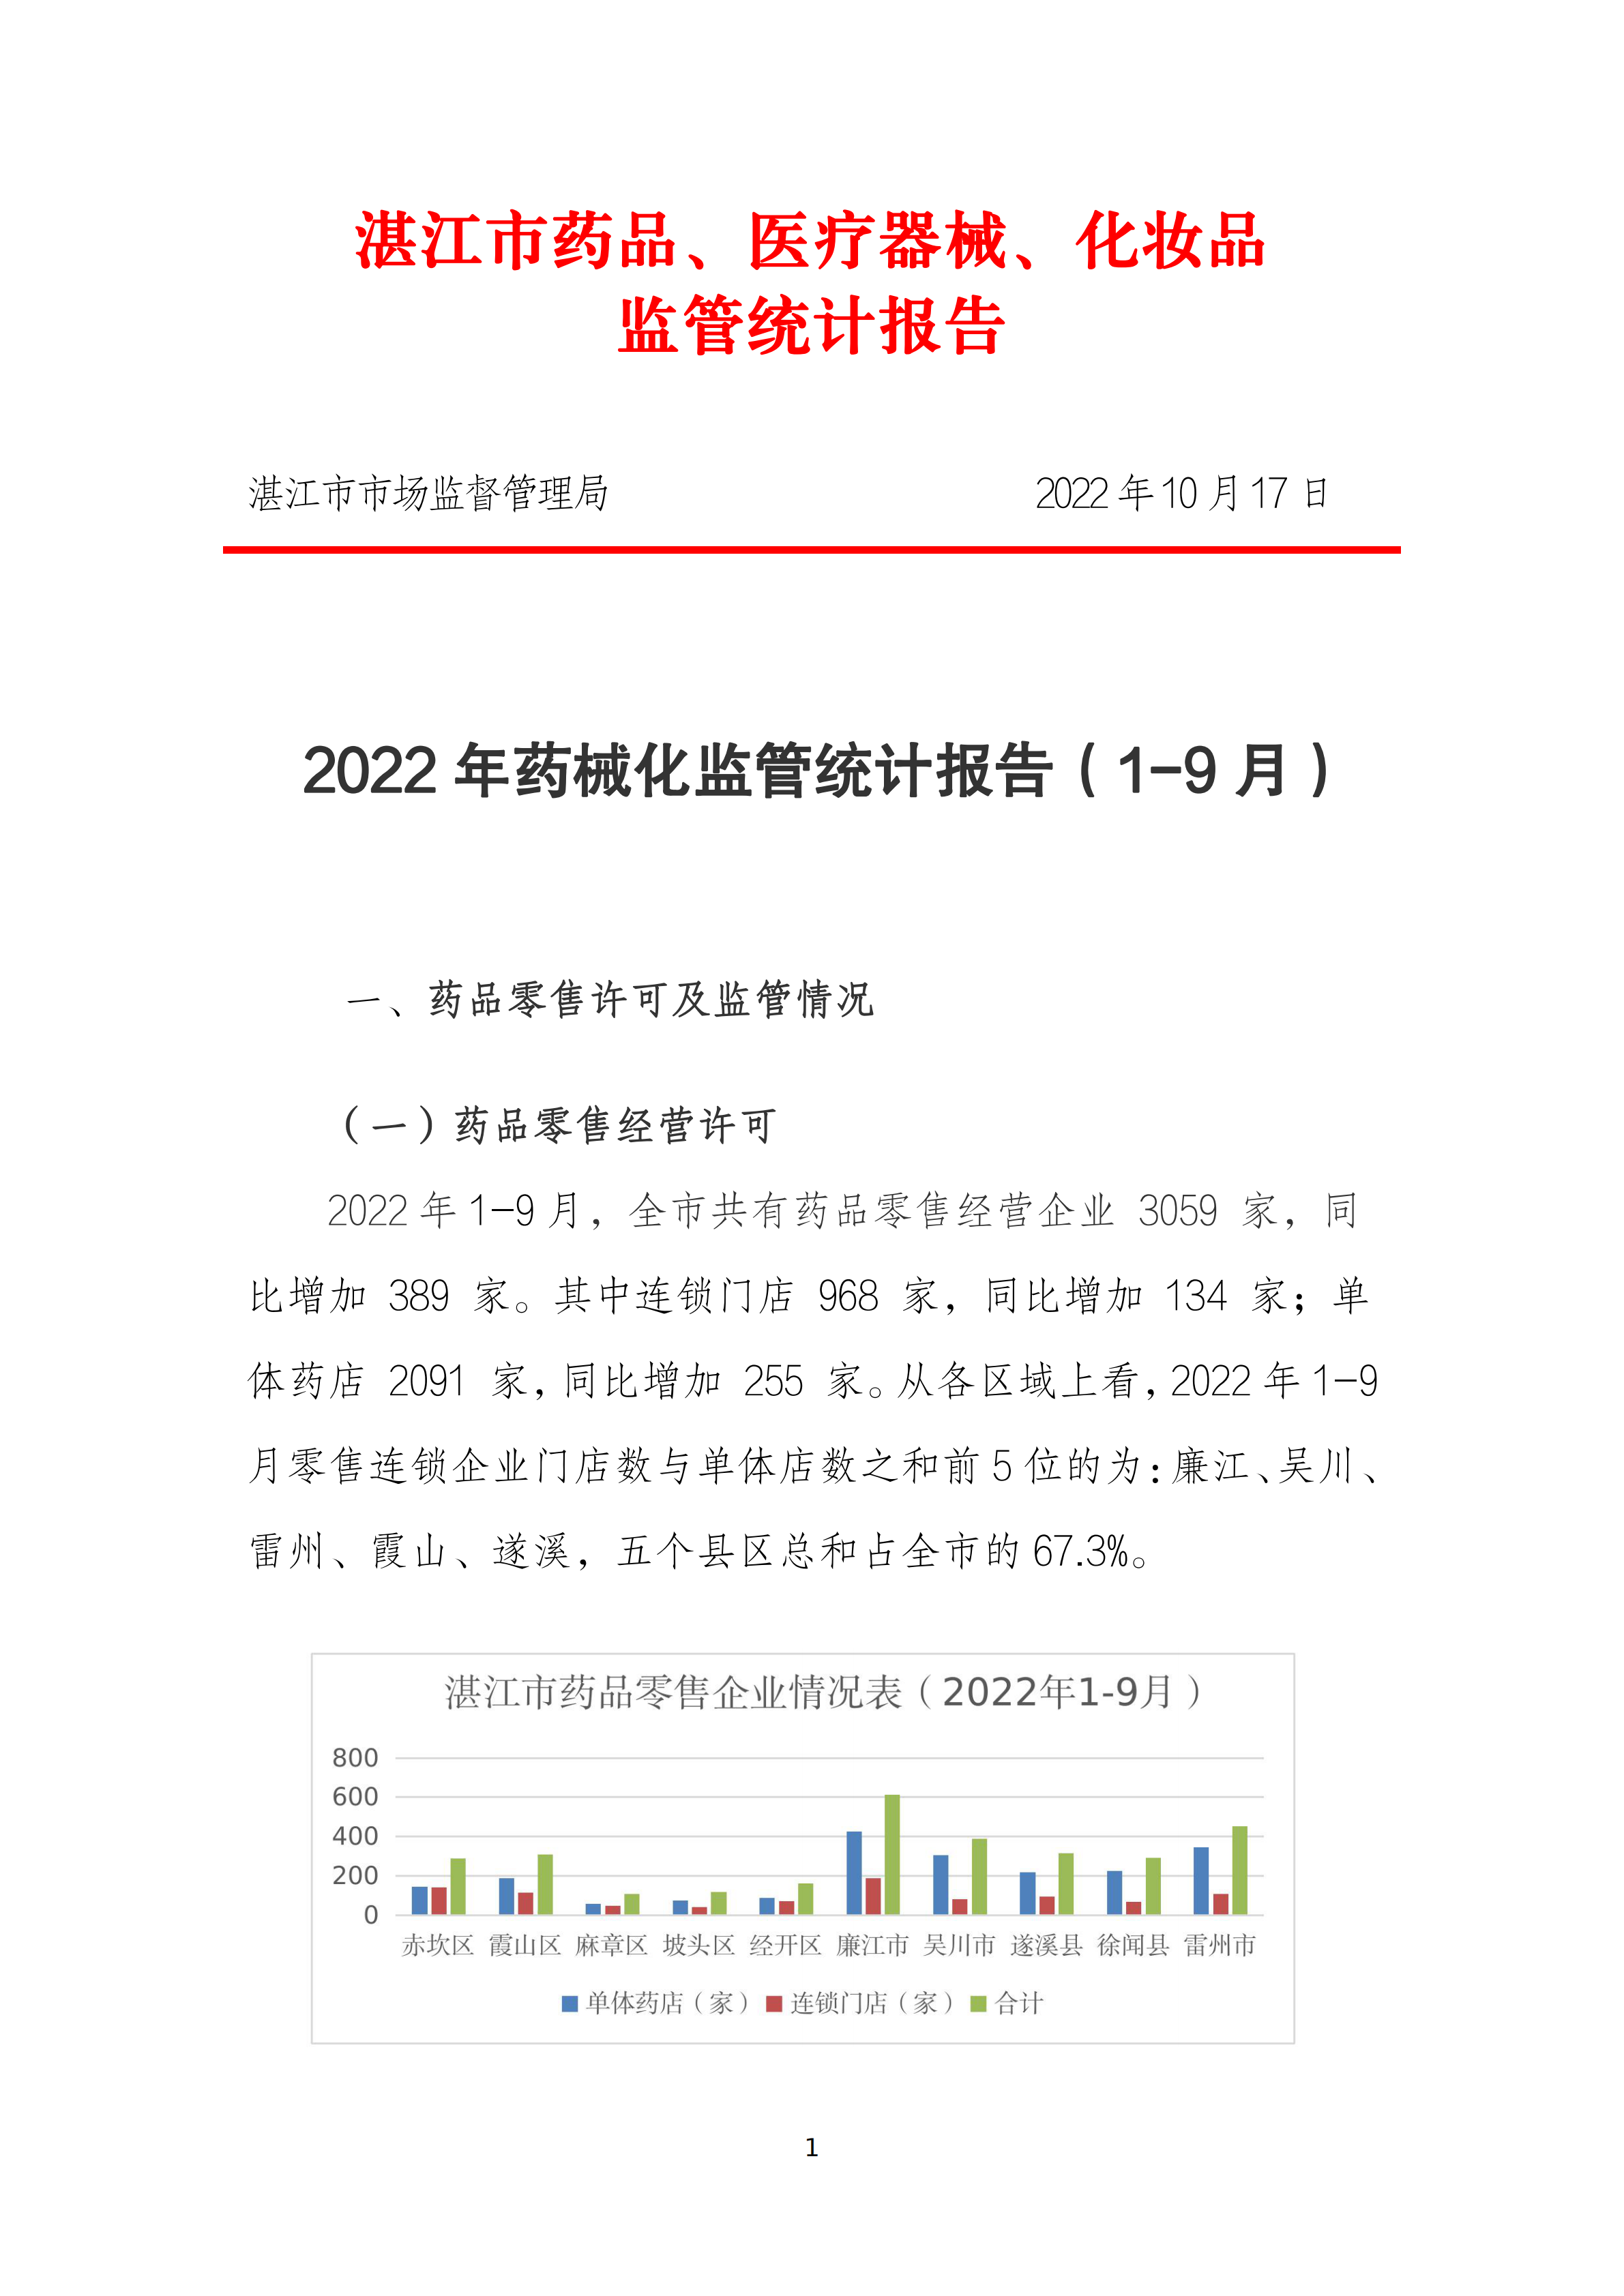 2022年药械化监管统计报告（1-9月）_00.png